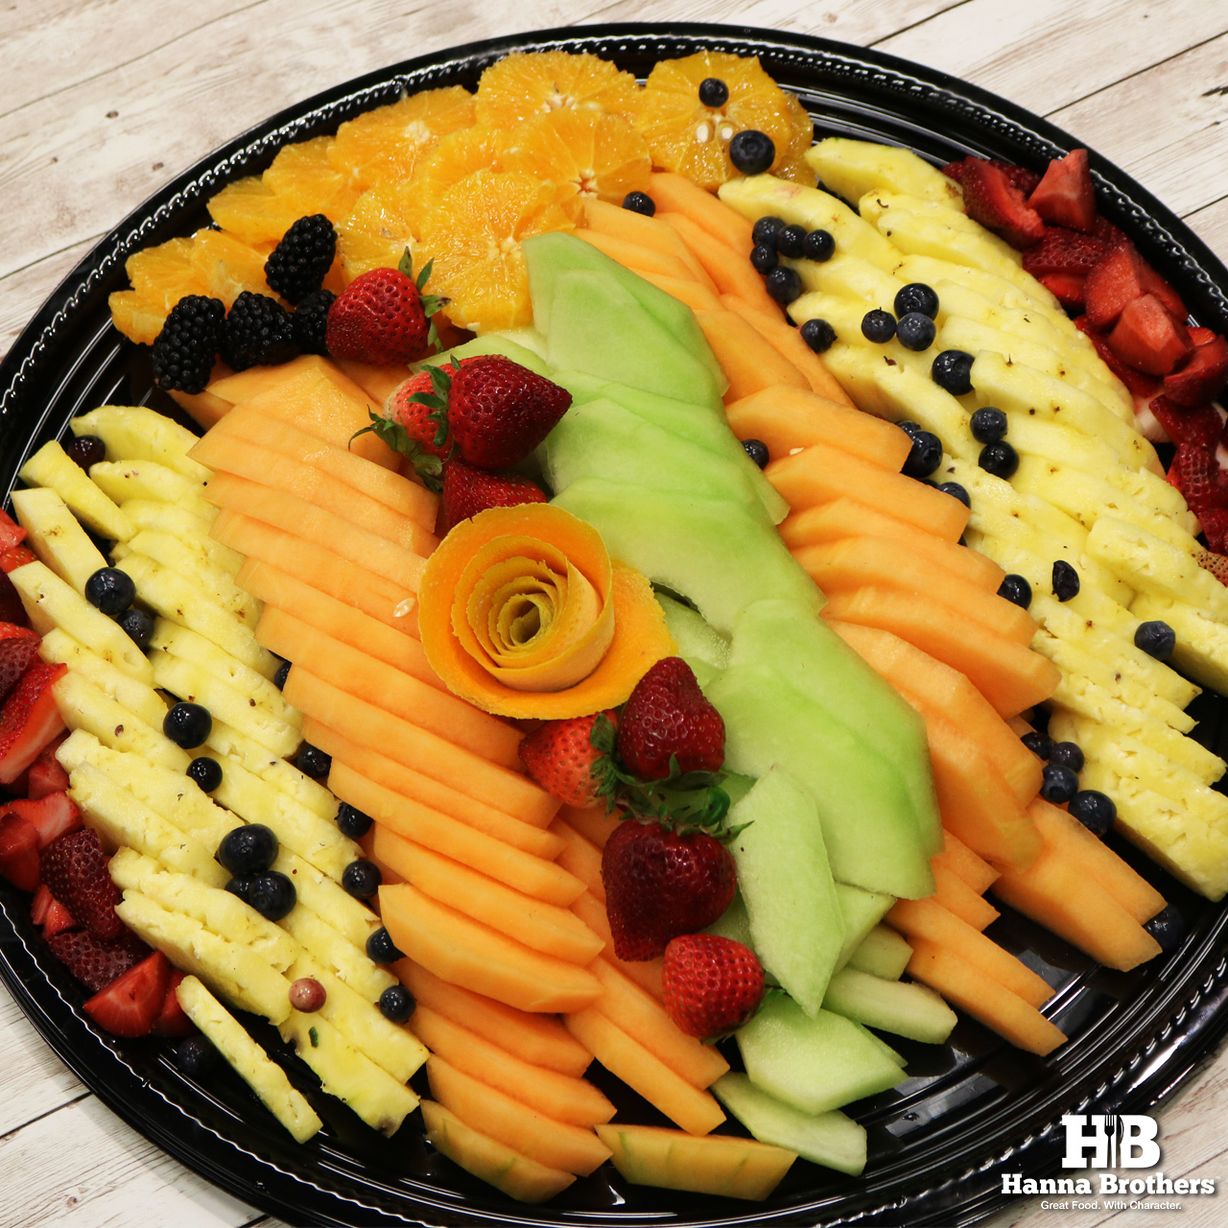 Large Fruit Platter at Studio Café  in Fayetteville, GA 30214 | YourMenu Online Ordering